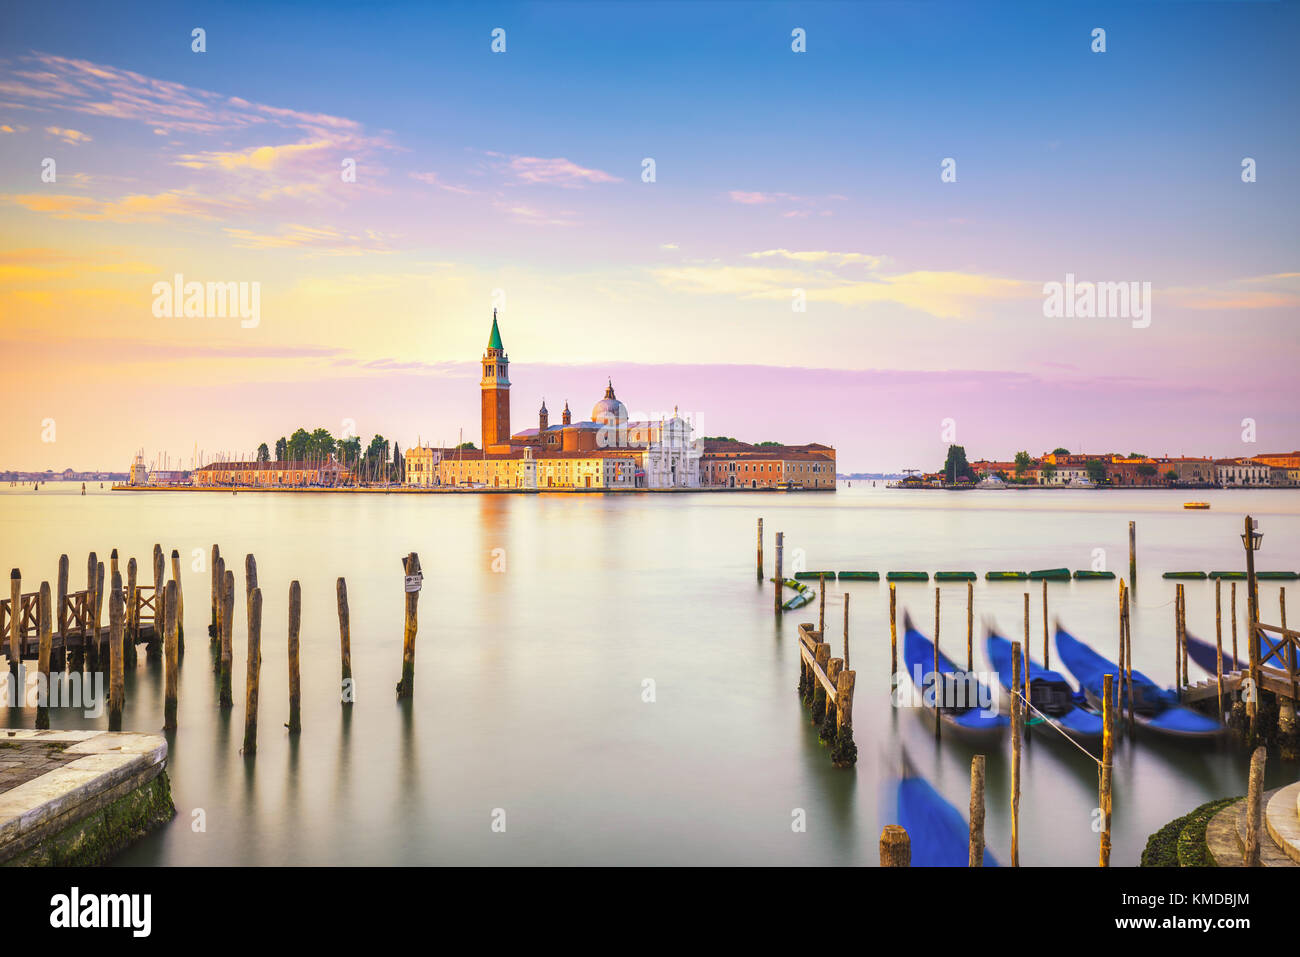 Venice lagoon at sunrise, San Giorgio Maggiore church, gondolas and poles. Italy, Europe. Stock Photo